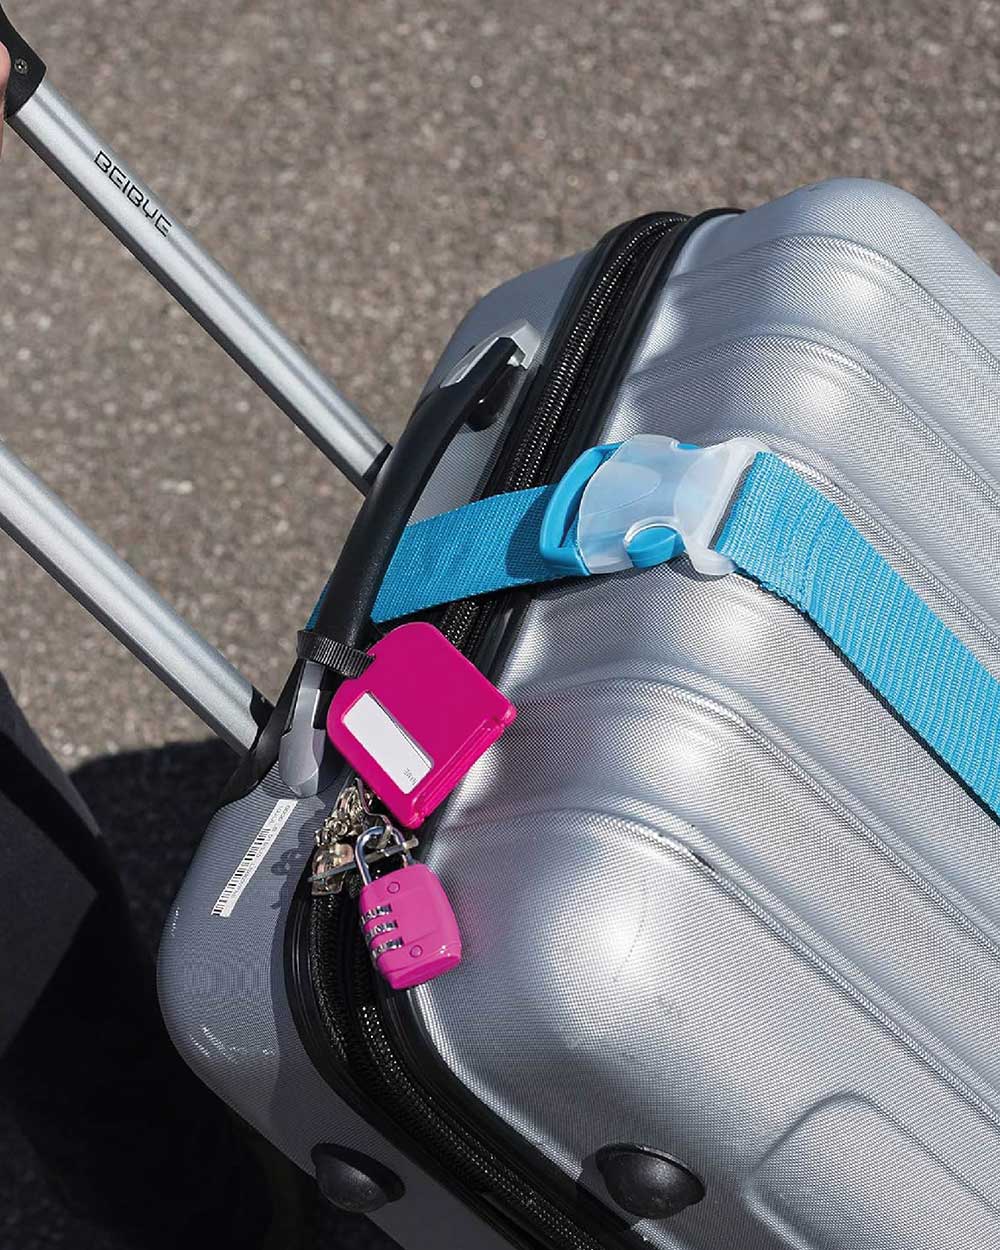 Luggage Strap Adjustable Belt Suitcase Blue lifestyle image being used on suitcase